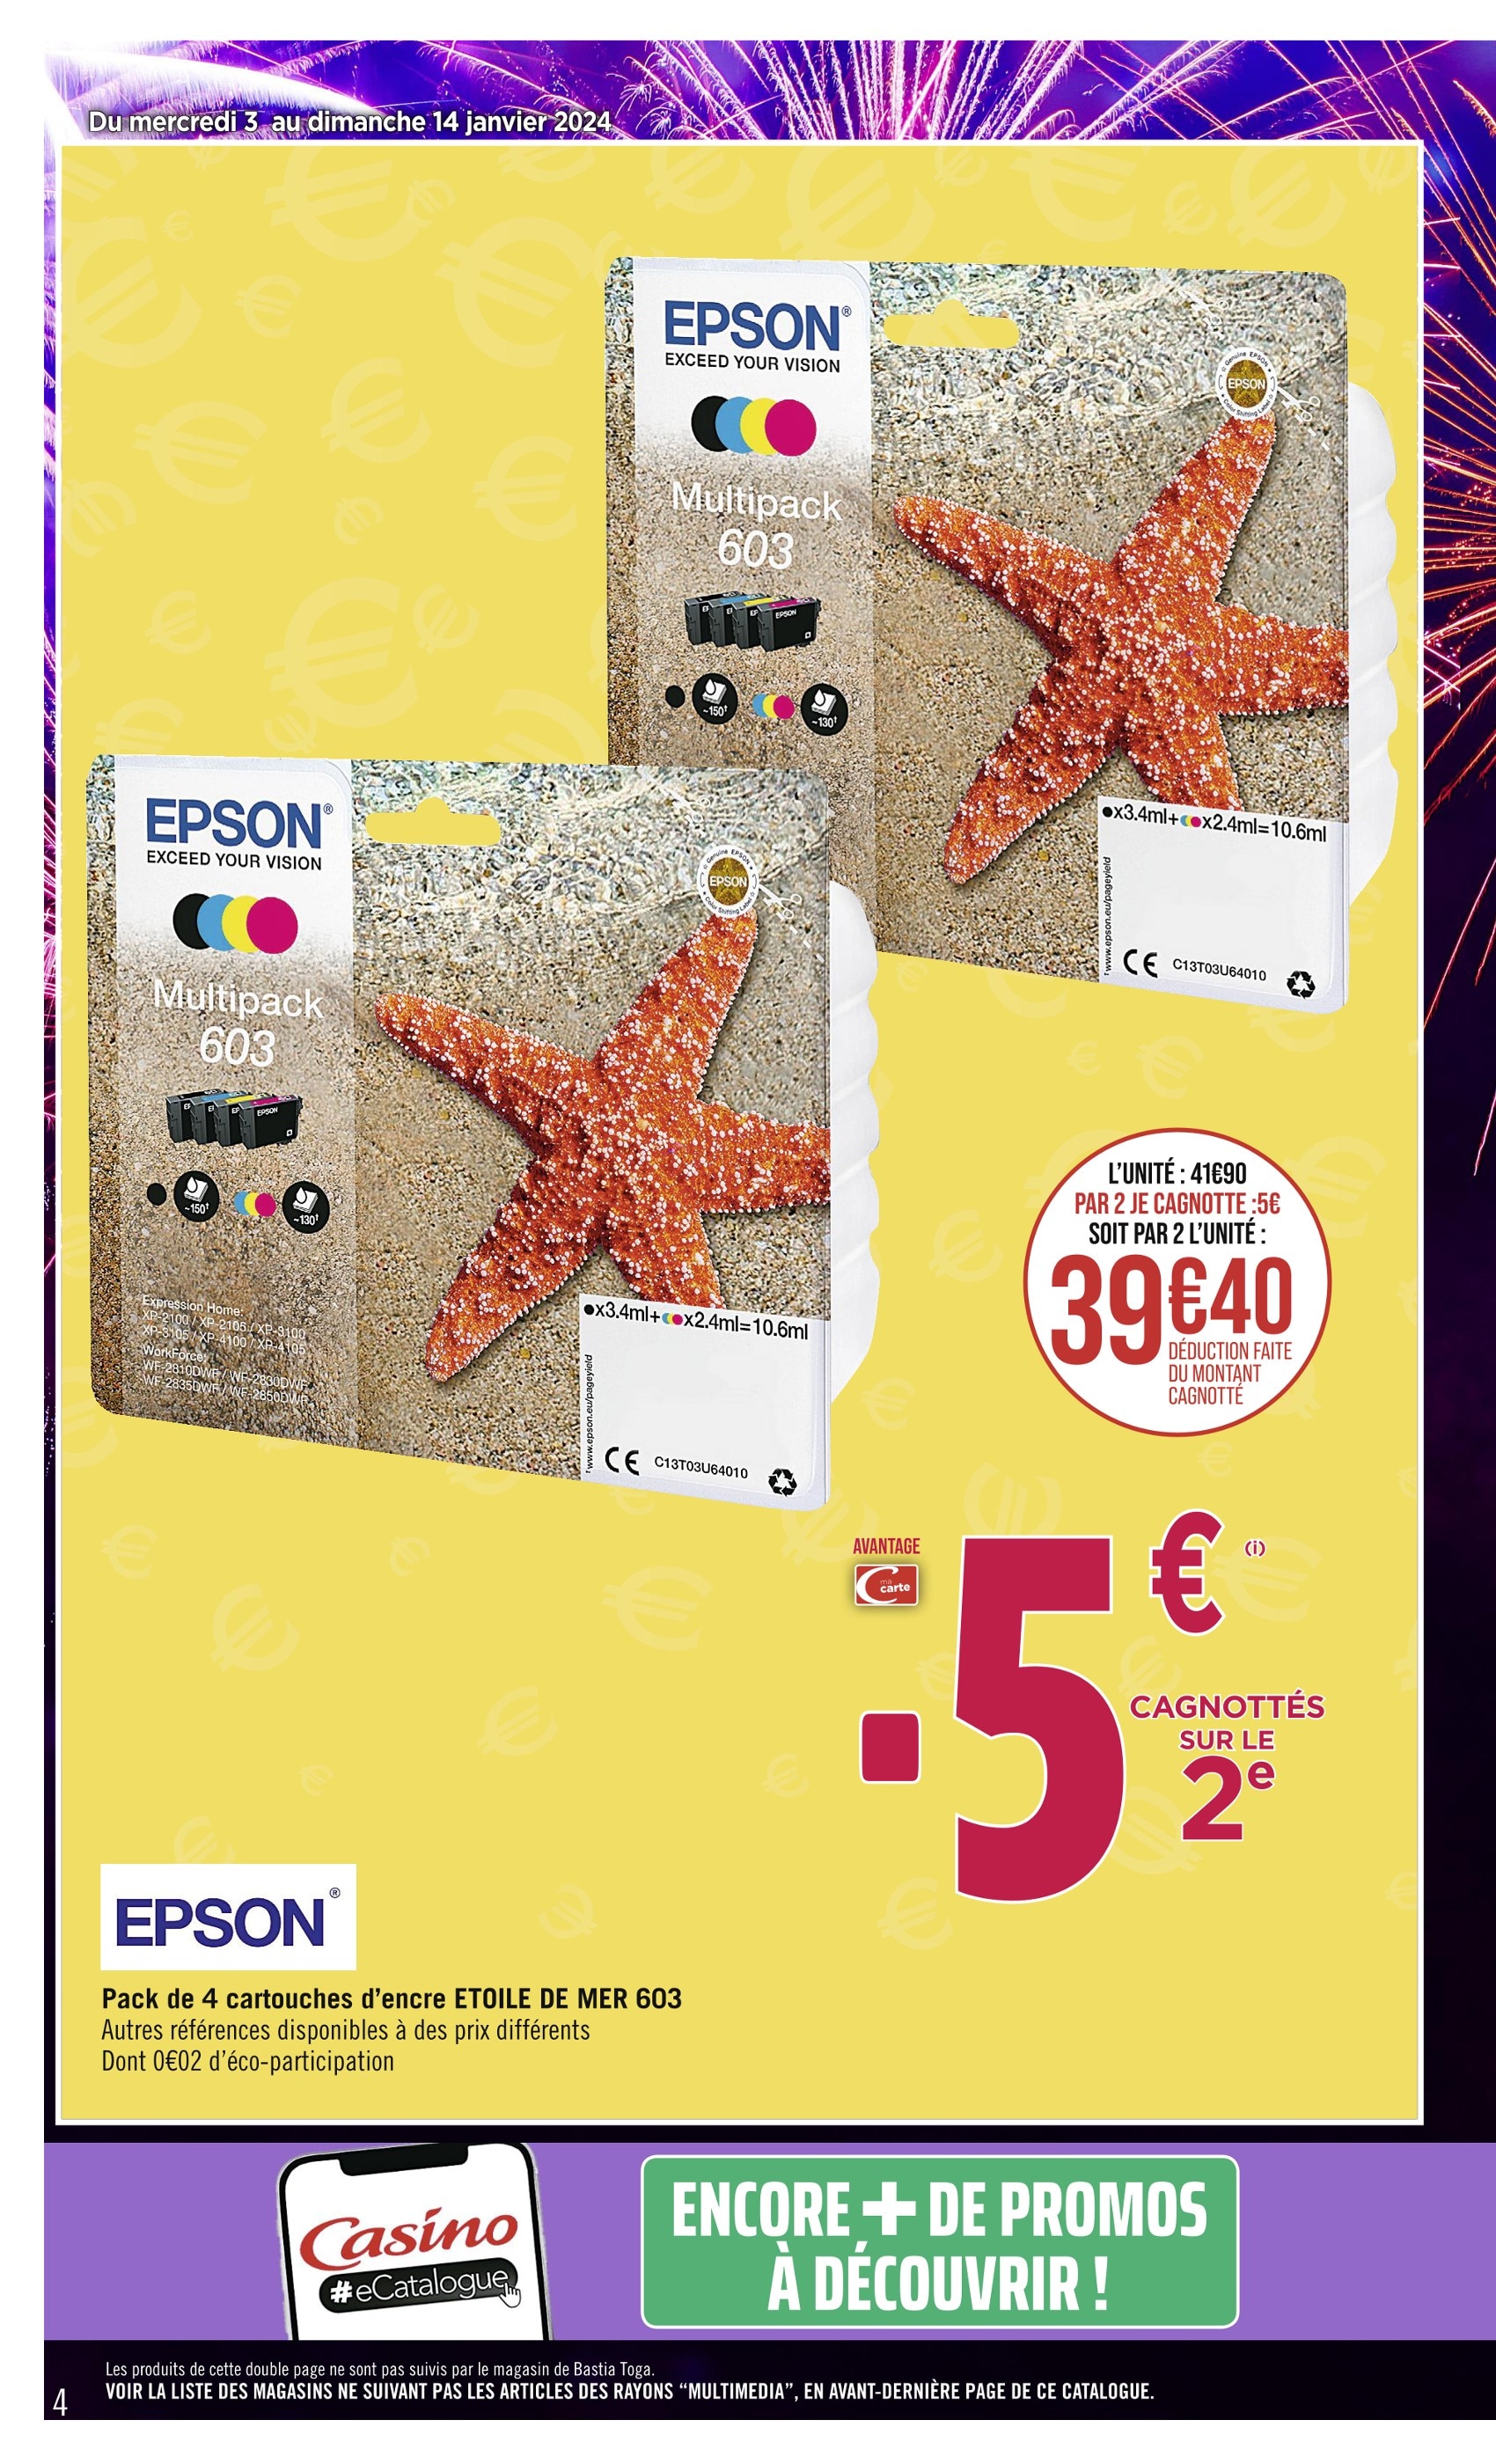 Promo Epson pack 4 cartouches 603 noir étoile chez Géant Casino